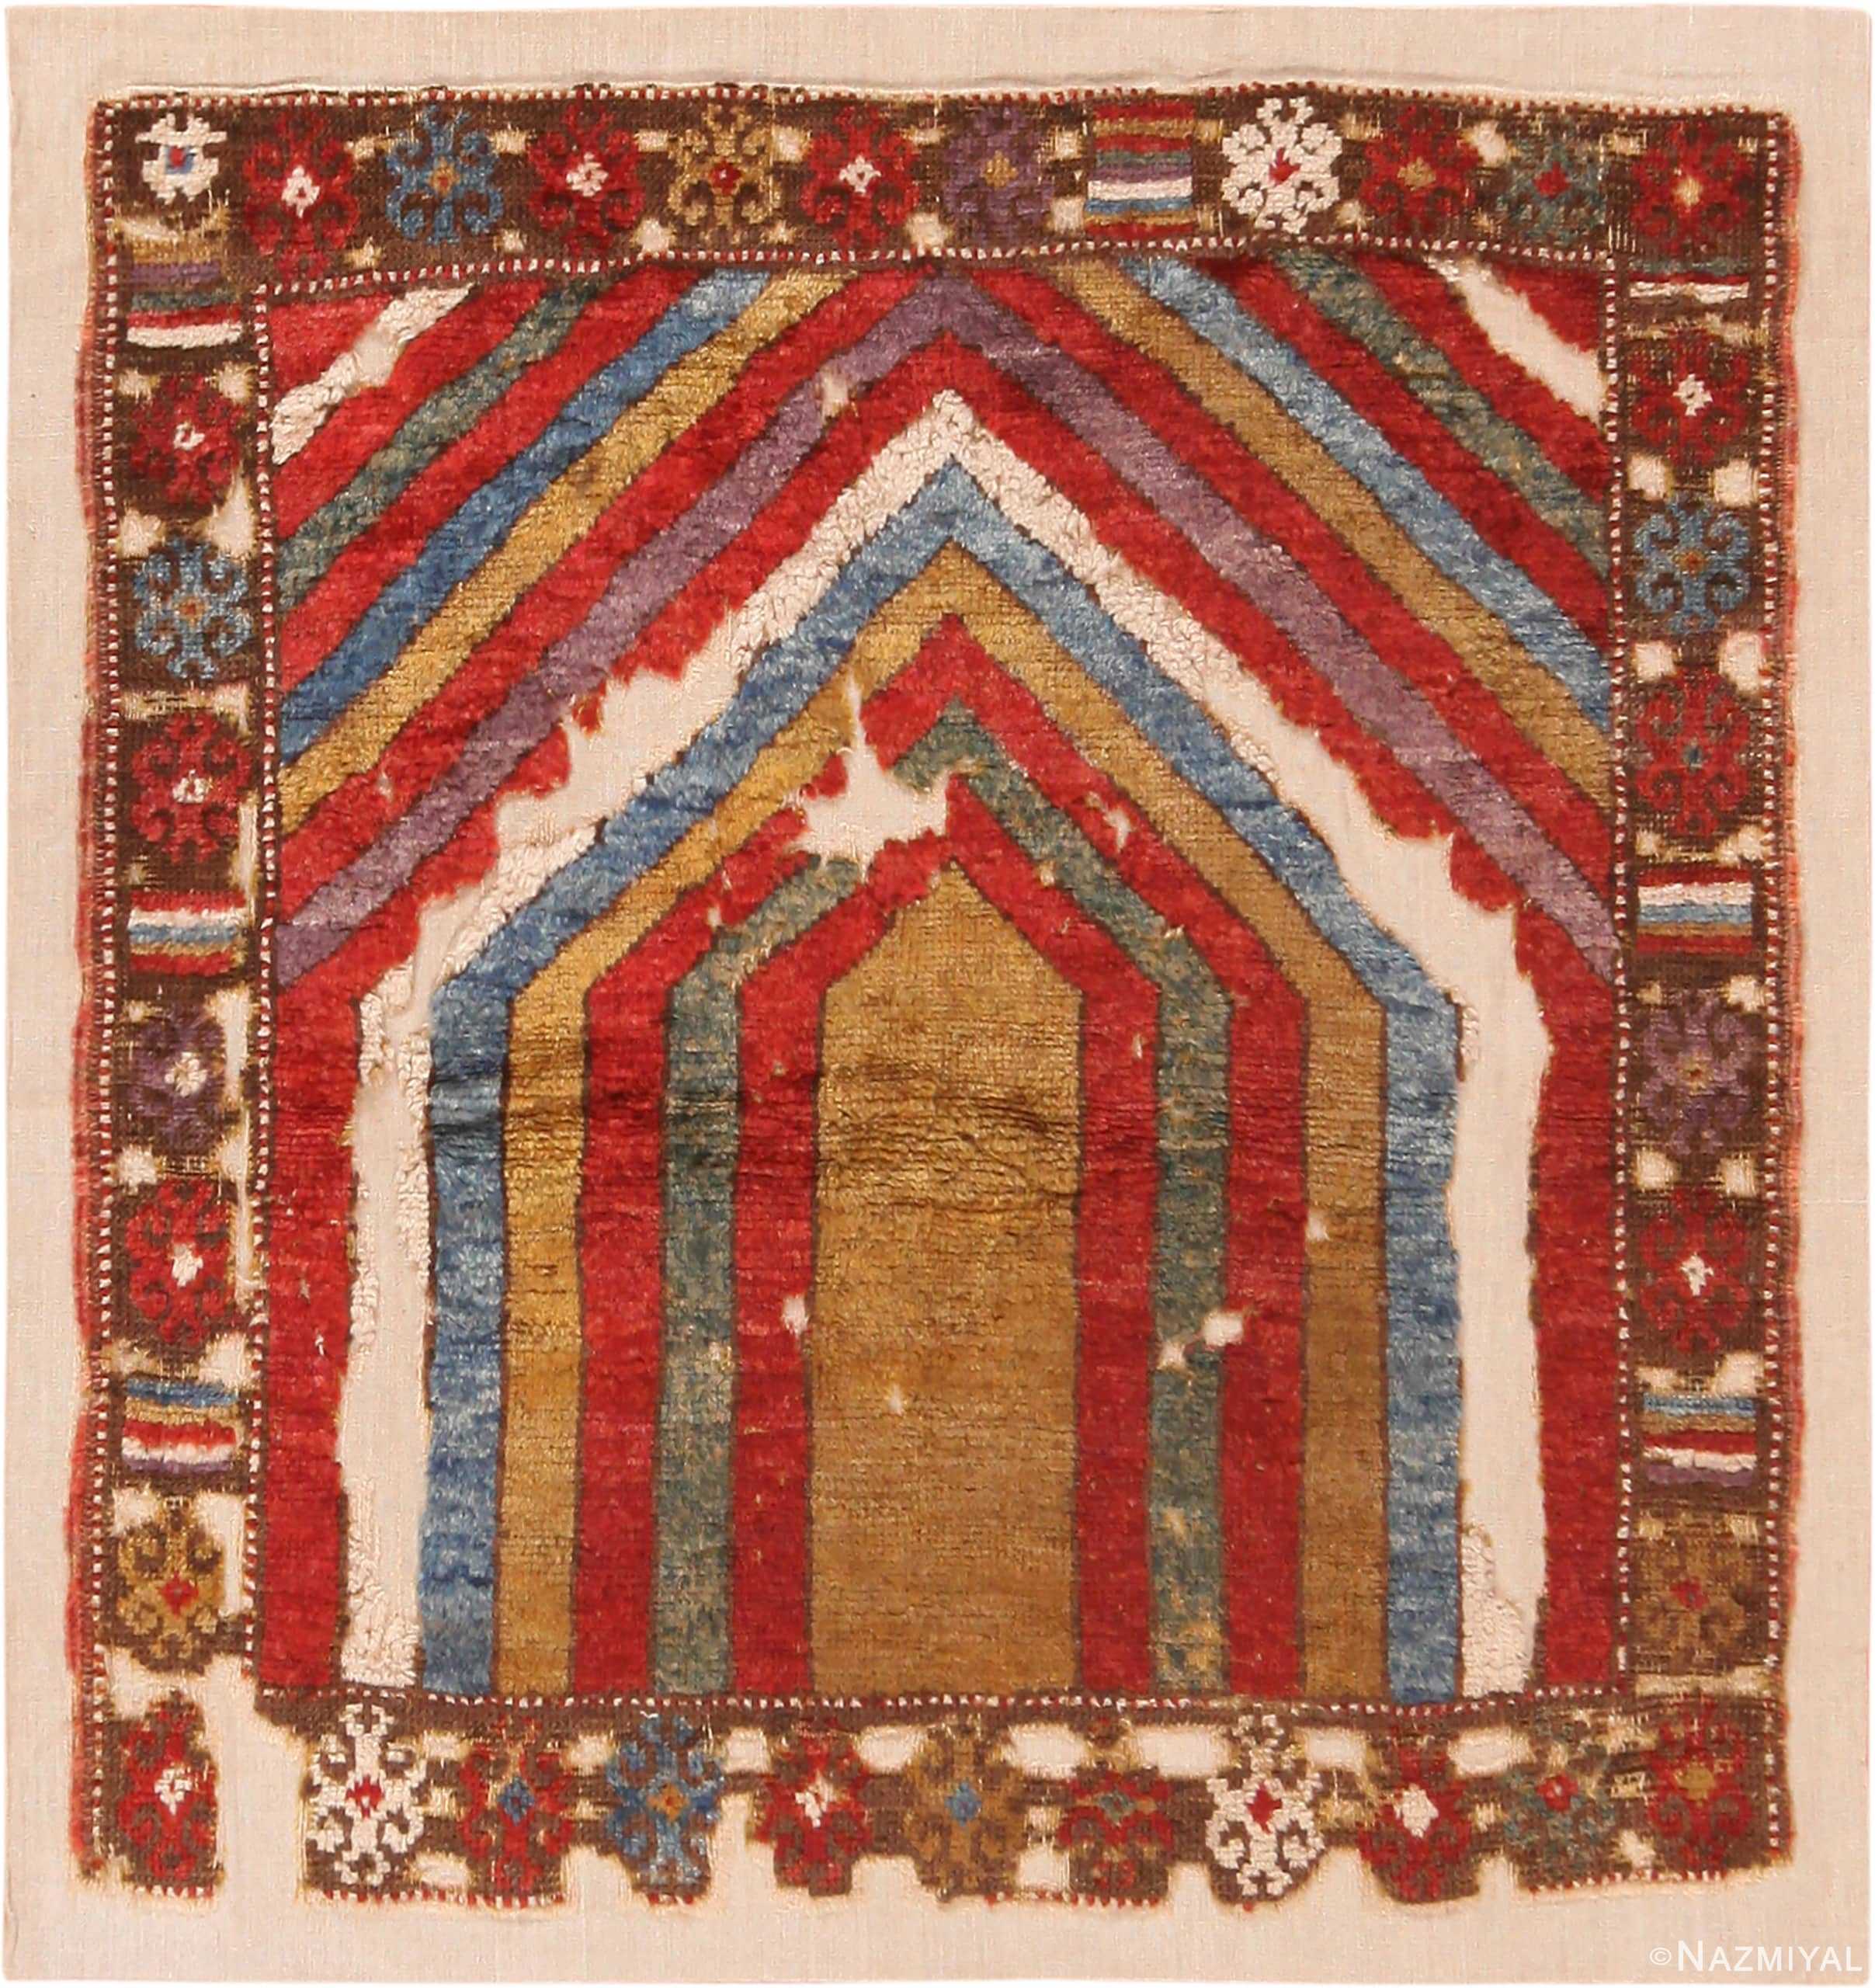 Antique Turkish Konya Prayer Rug 71261 by Nazmiyal Antique Rugs